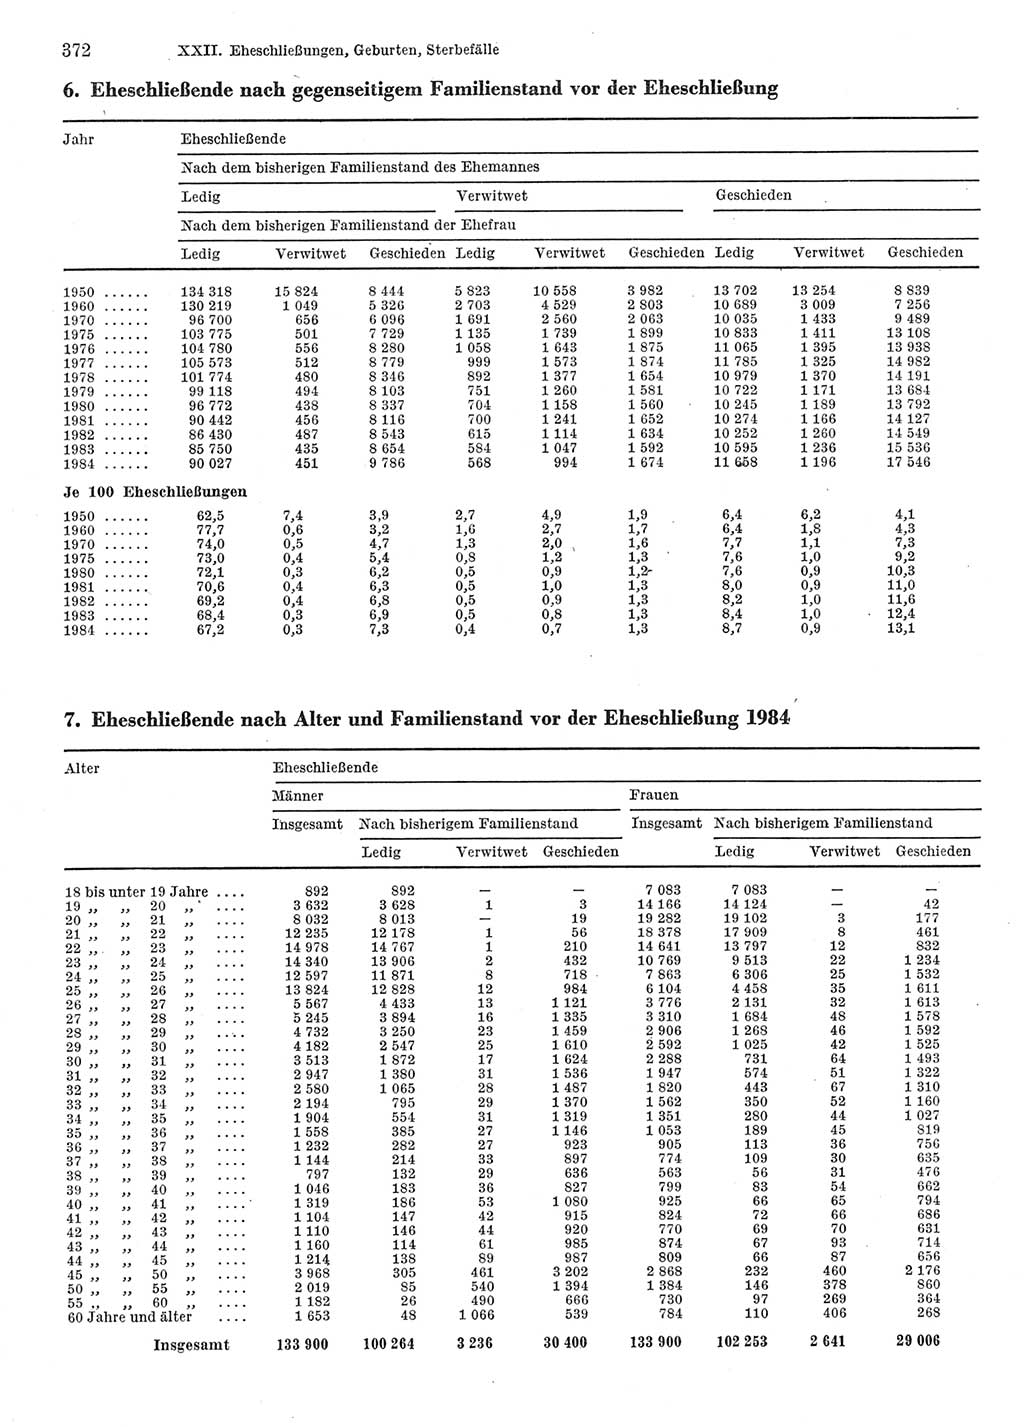 Statistisches Jahrbuch der Deutschen Demokratischen Republik (DDR) 1986, Seite 372 (Stat. Jb. DDR 1986, S. 372)